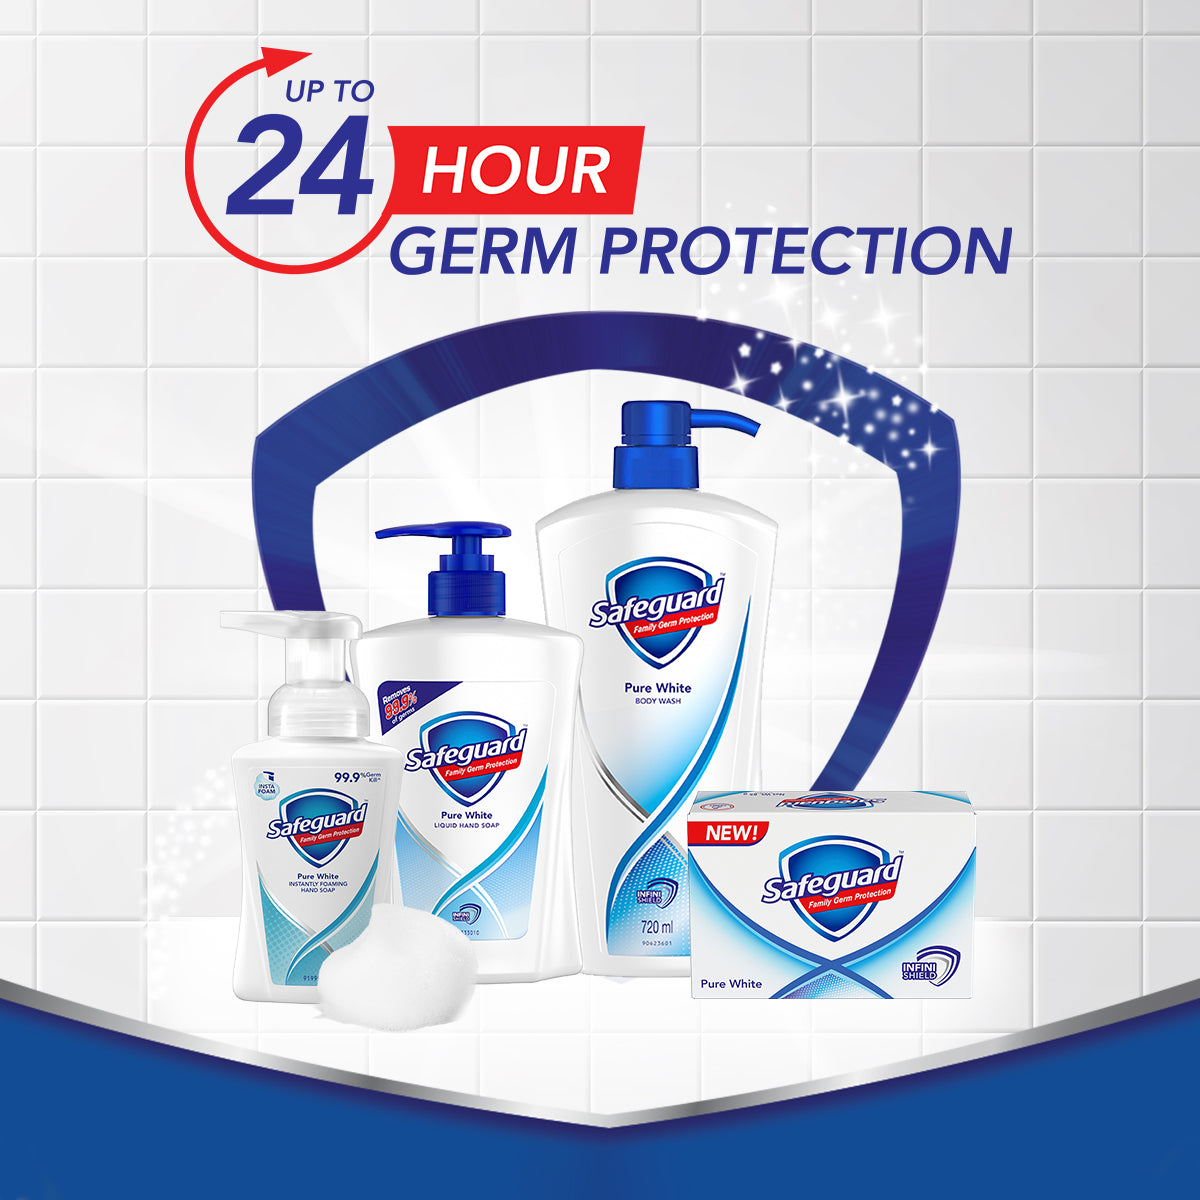 Safeguard Active Fresh Cream Deodorant 45g